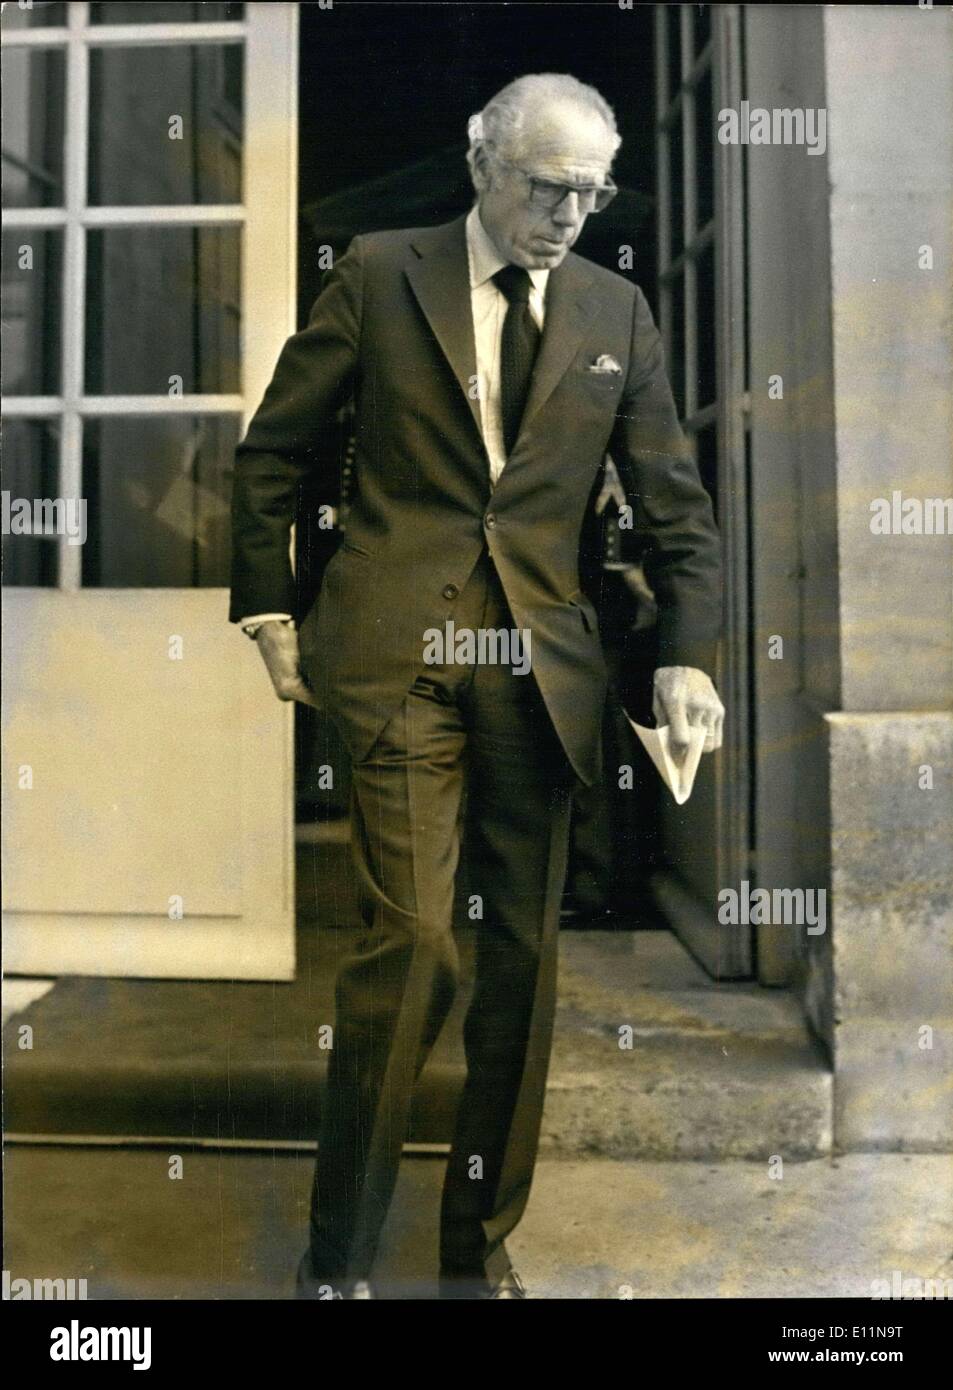 Marzo 28, 1979 - Alain de Rothschild, en representación del Fondo Social  Judía Unida, se reunió con el primer ministro Raymond Barre en el Hôtel  Matignon acerca de la situación de los